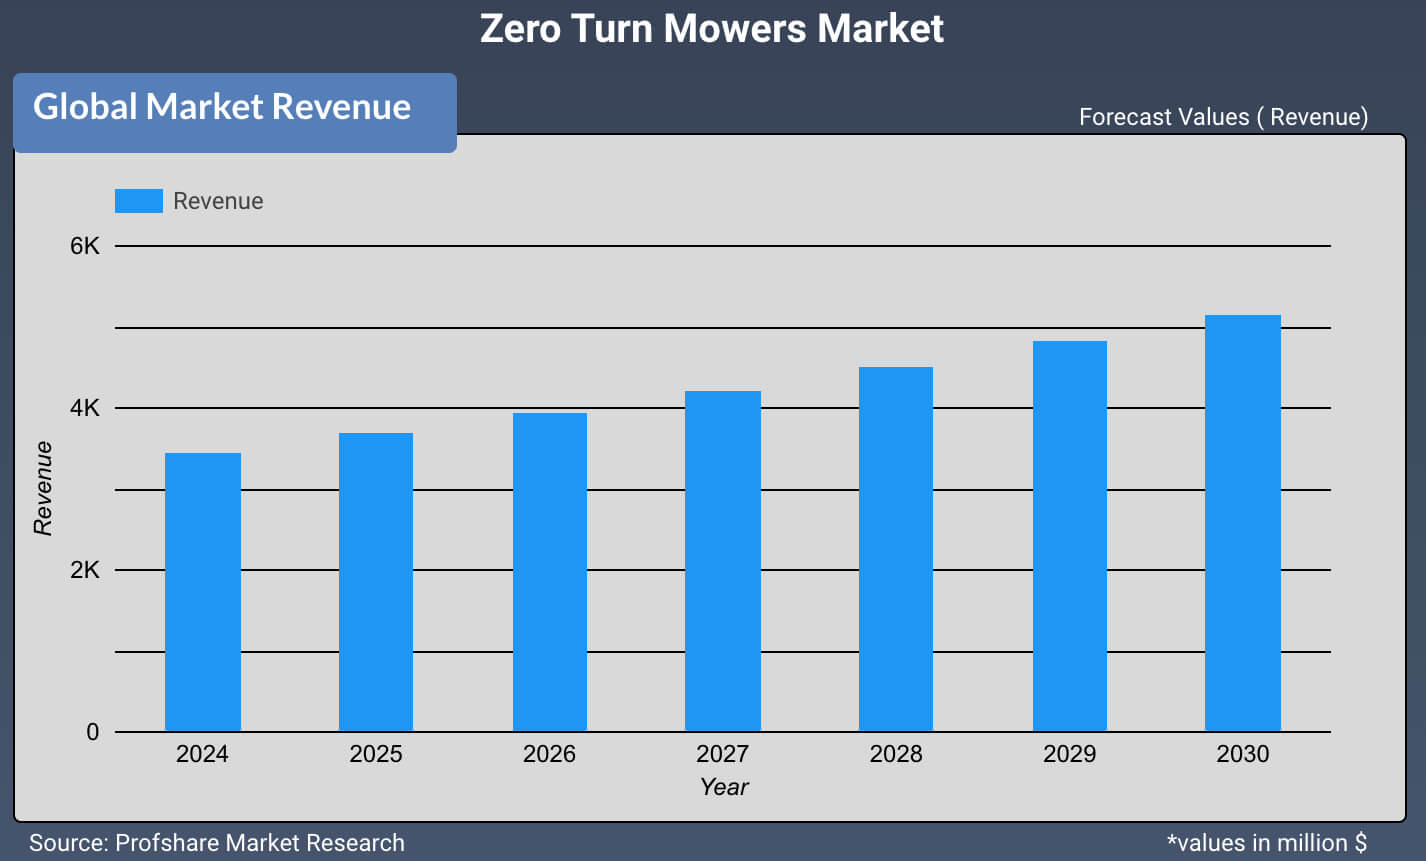 Zero Turn Mowers Market